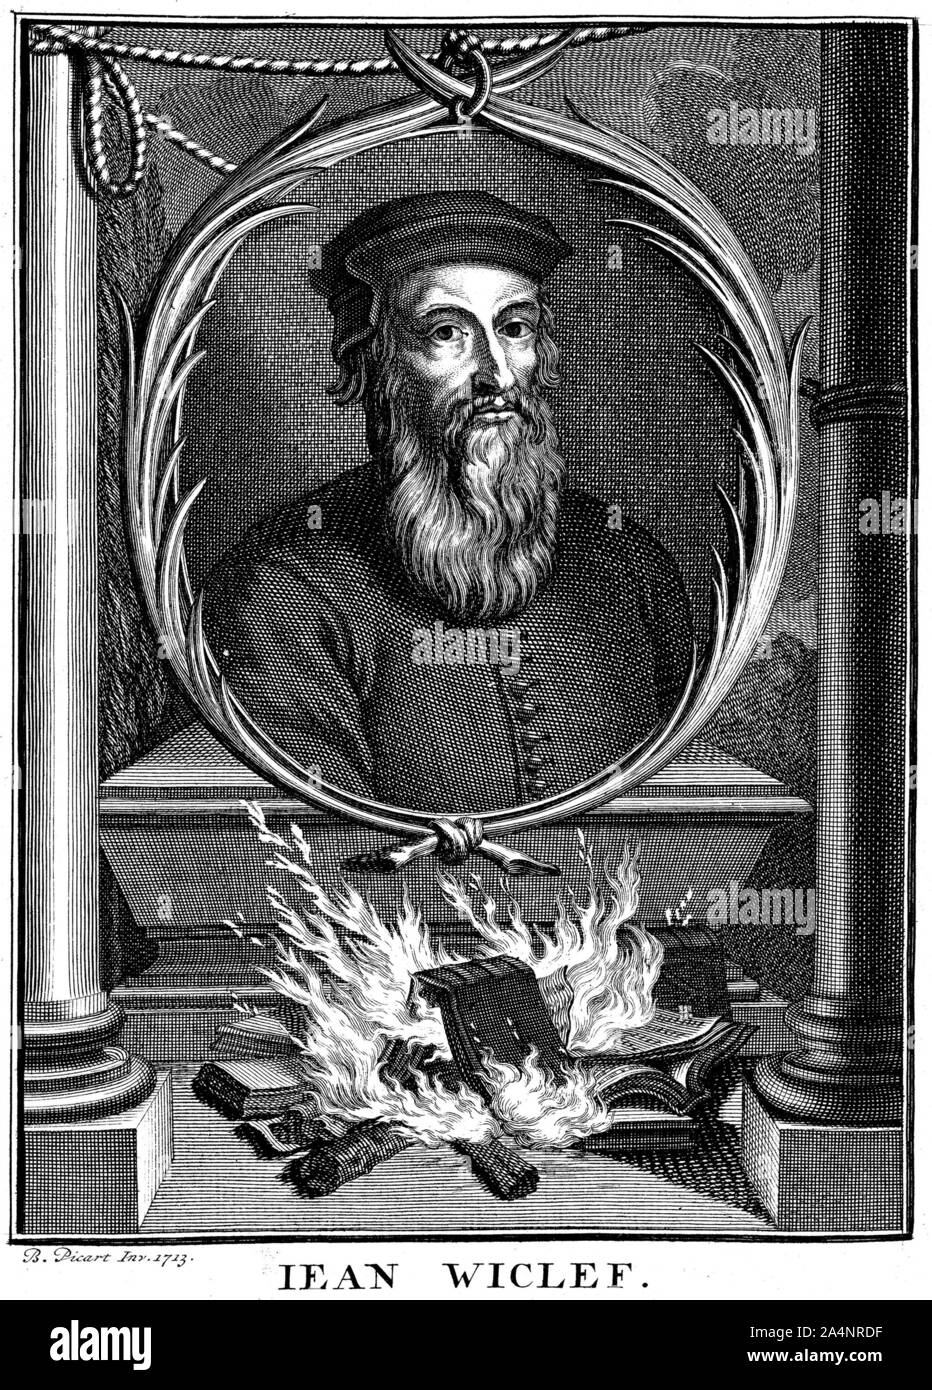 JOHN WYCLIF (1320-1384) théologien anglais c dans une gravure de Bernard en 1714 Picrad ce qui montre l'incendie de ses livres. Banque D'Images